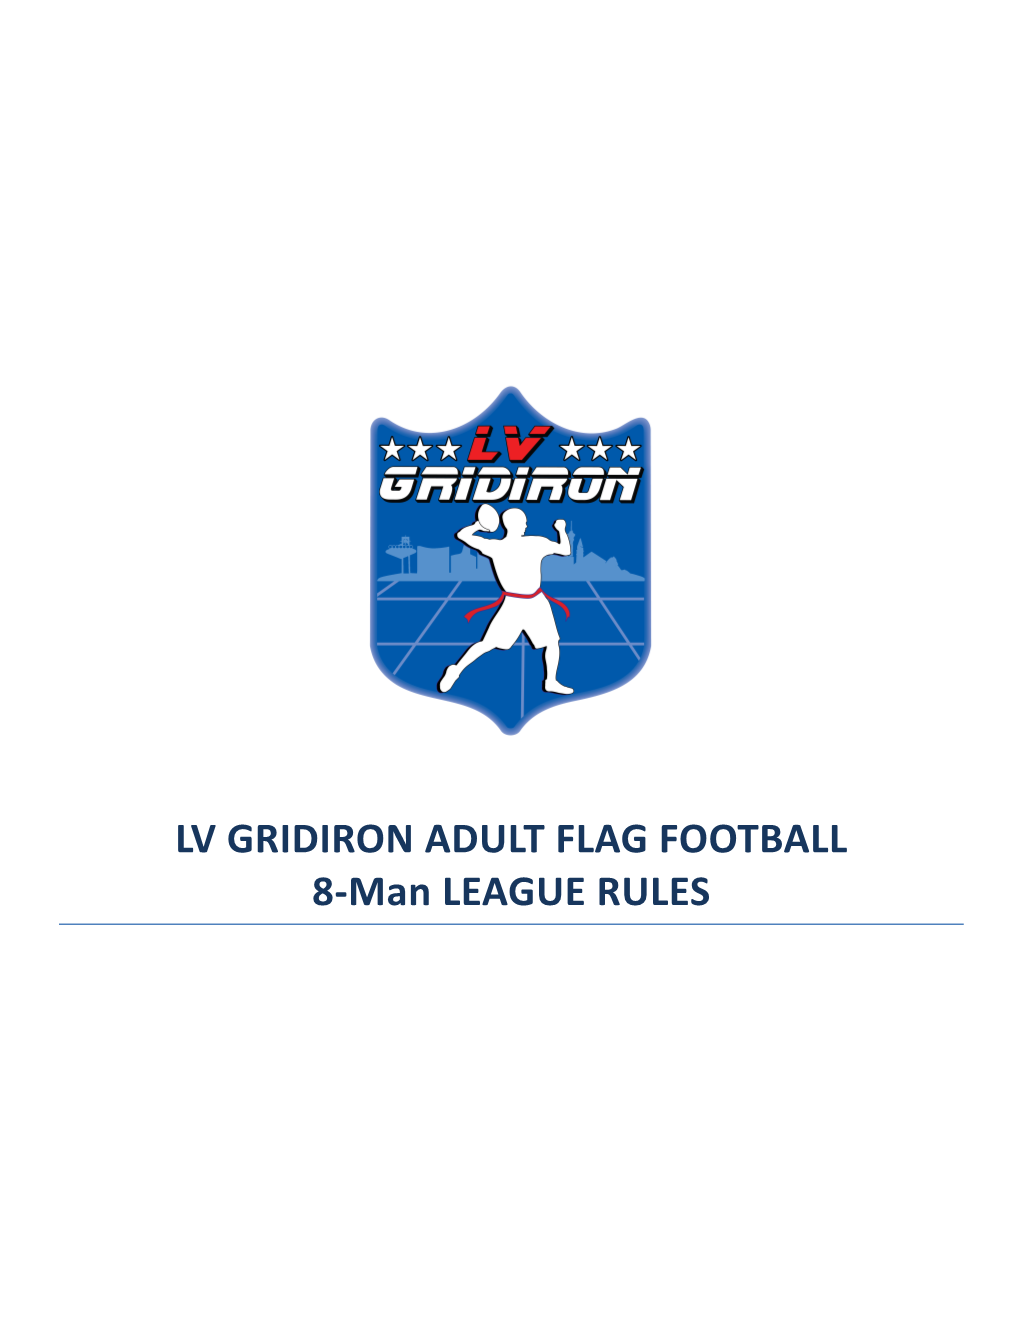 LV GRIDIRON ADULT FLAG FOOTBALL 8-Man LEAGUE RULES